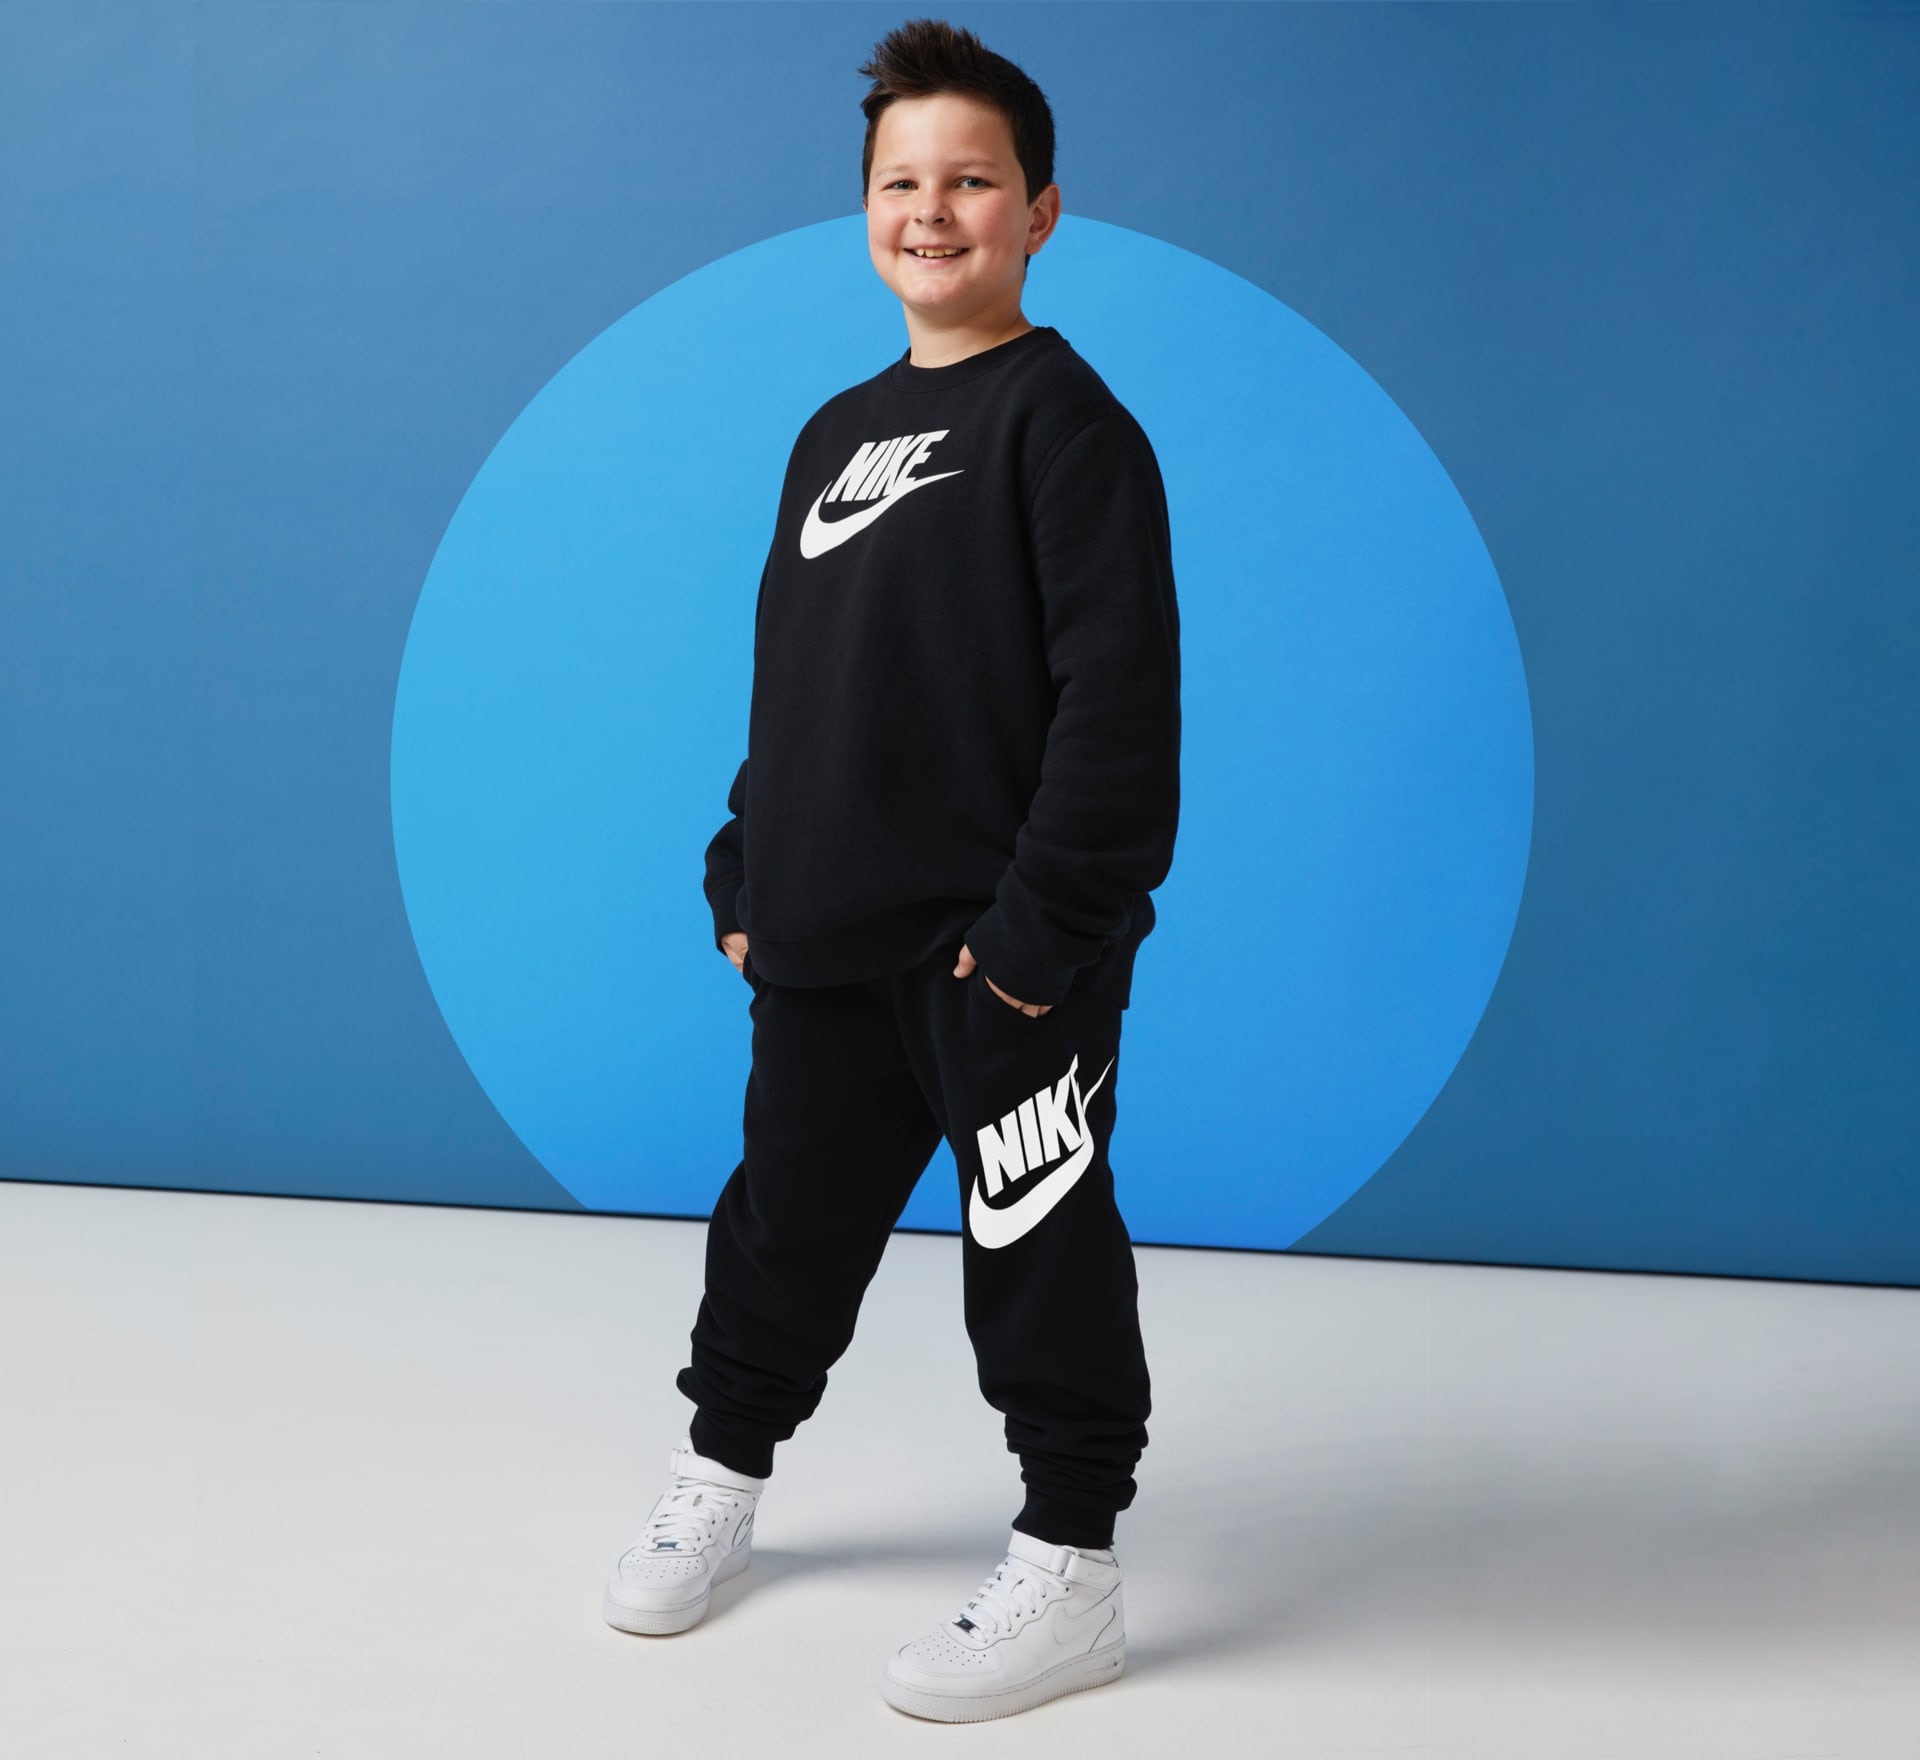 gemak Centimeter driehoek Grotere maten voor kids. Nike NL